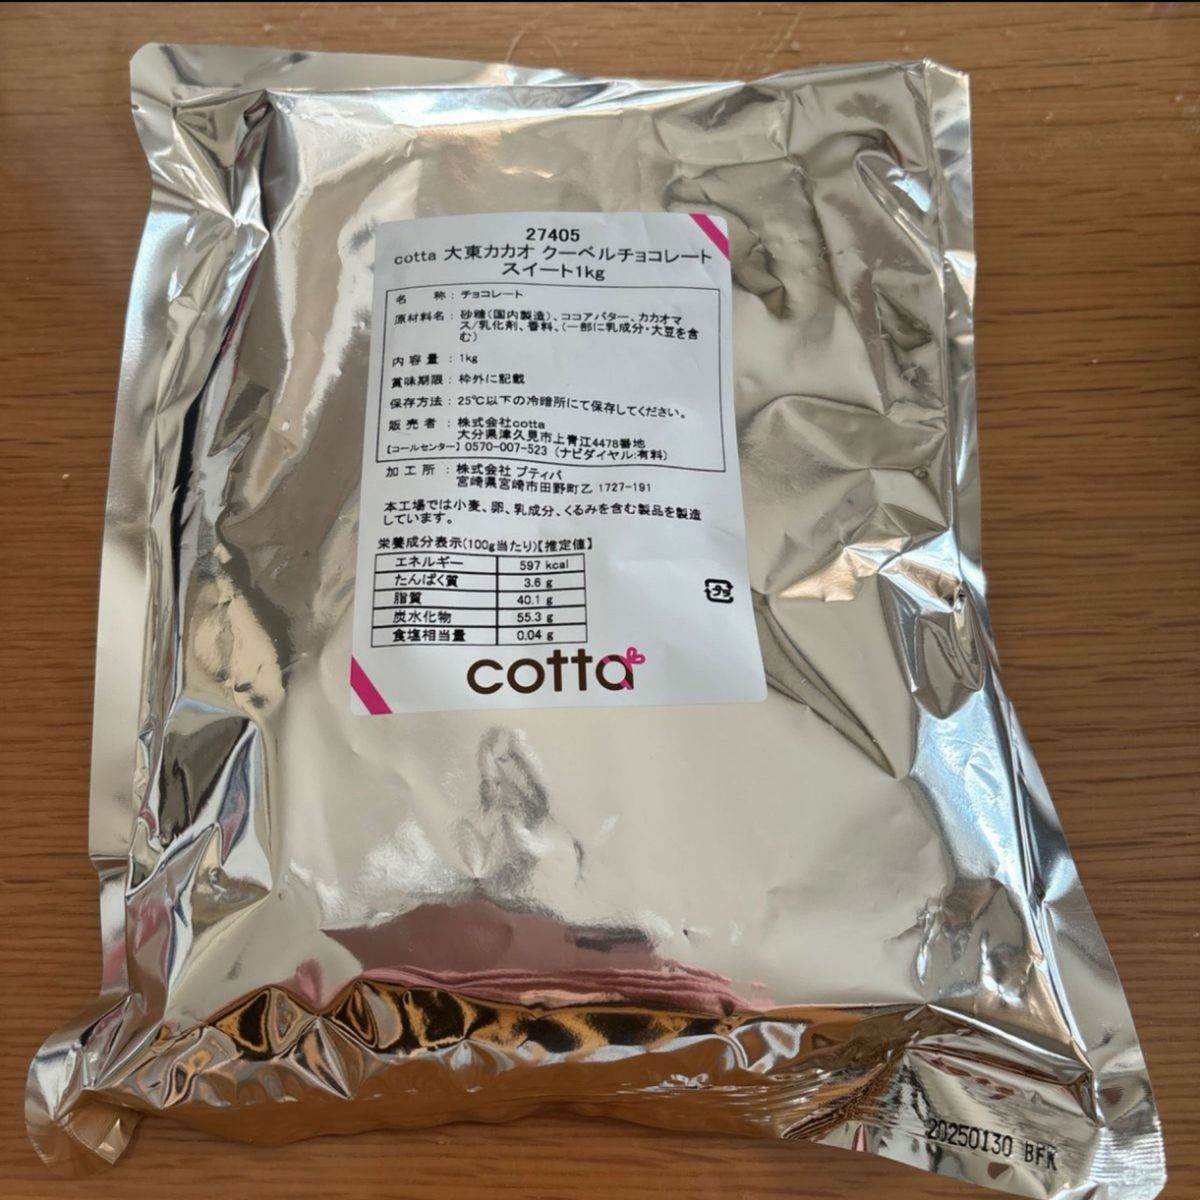 cotta 大東カカオ クーベルチョコレート スイート 1kg